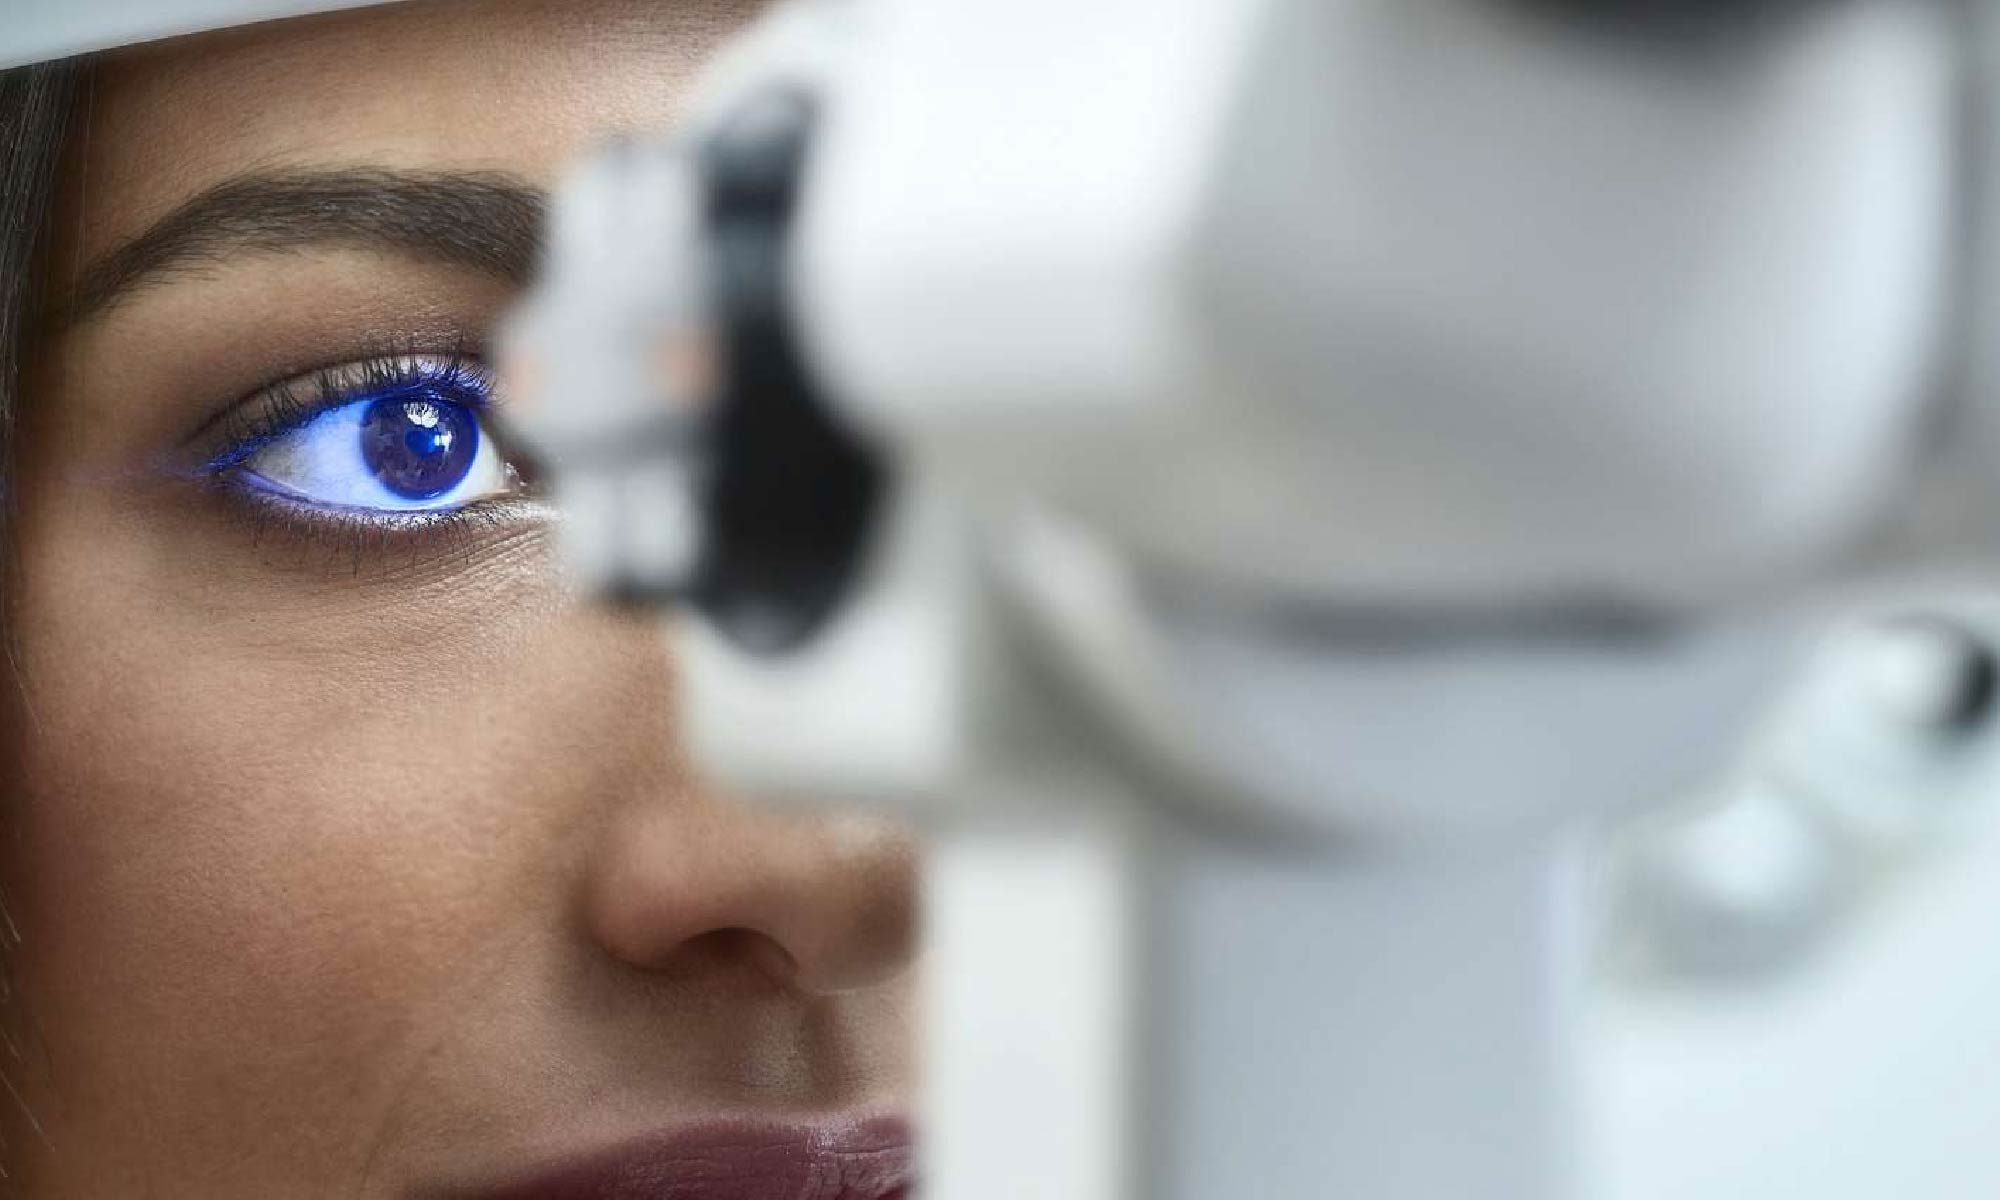 imagem de uma mulher fazendo exame oftalmológico. Está escrito: "Diabetes e a visão" #diabetes e há a logo da Retina Brasil